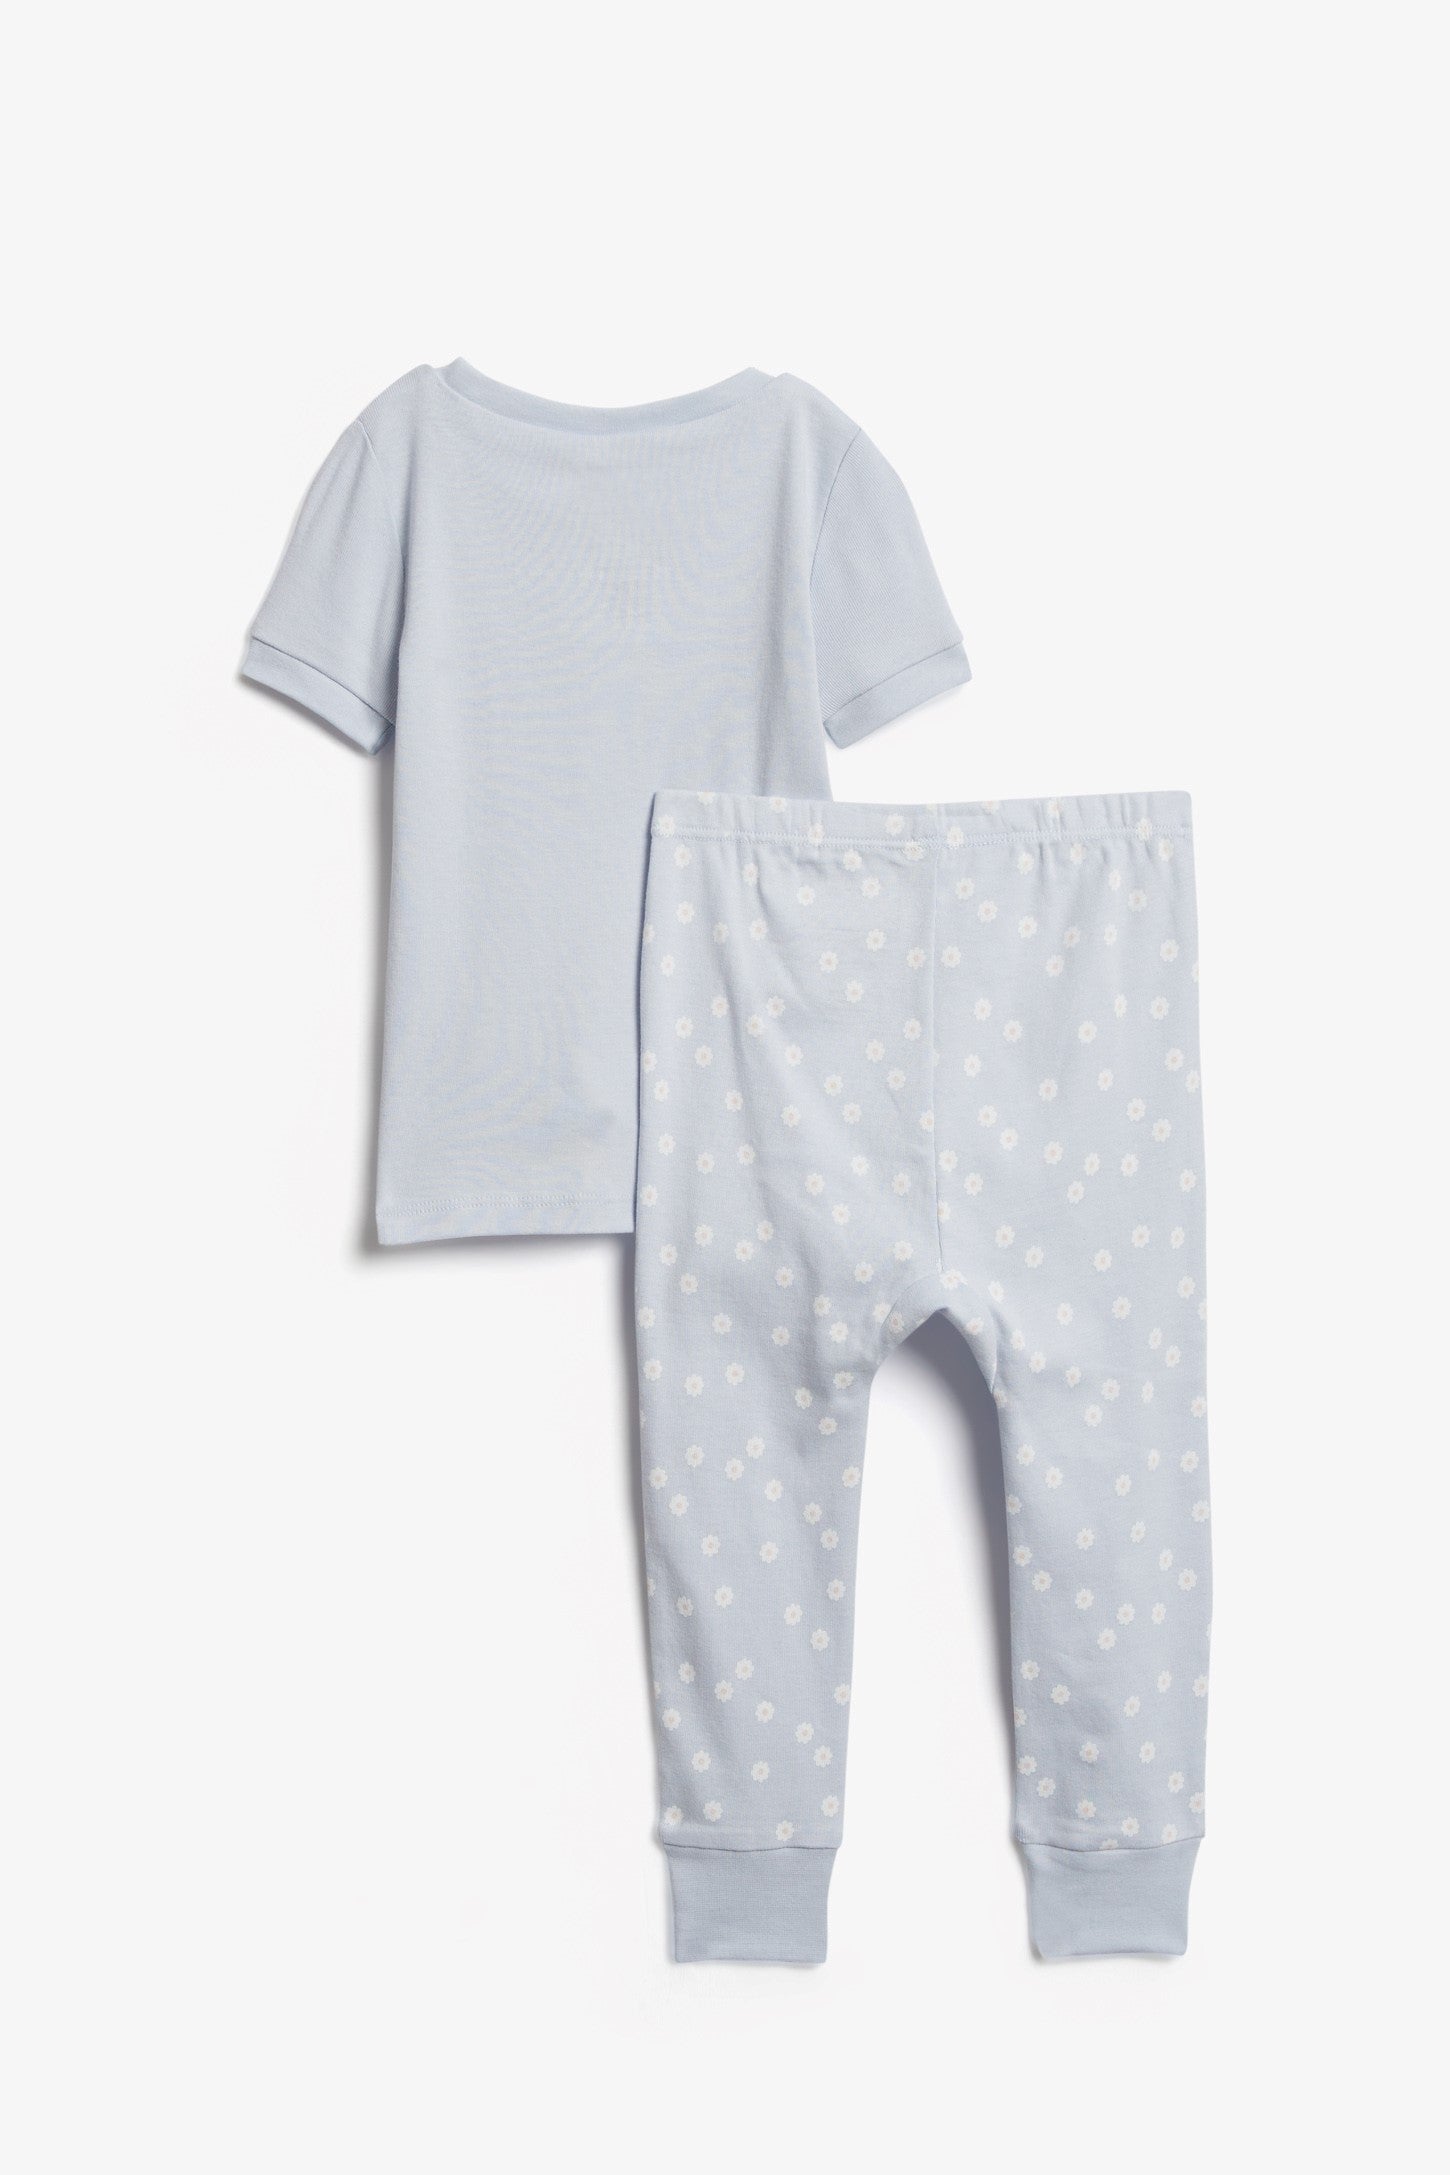 Pyjama 2-pièces en coton bio, 2/30$ - Bébé && BLEU PALE